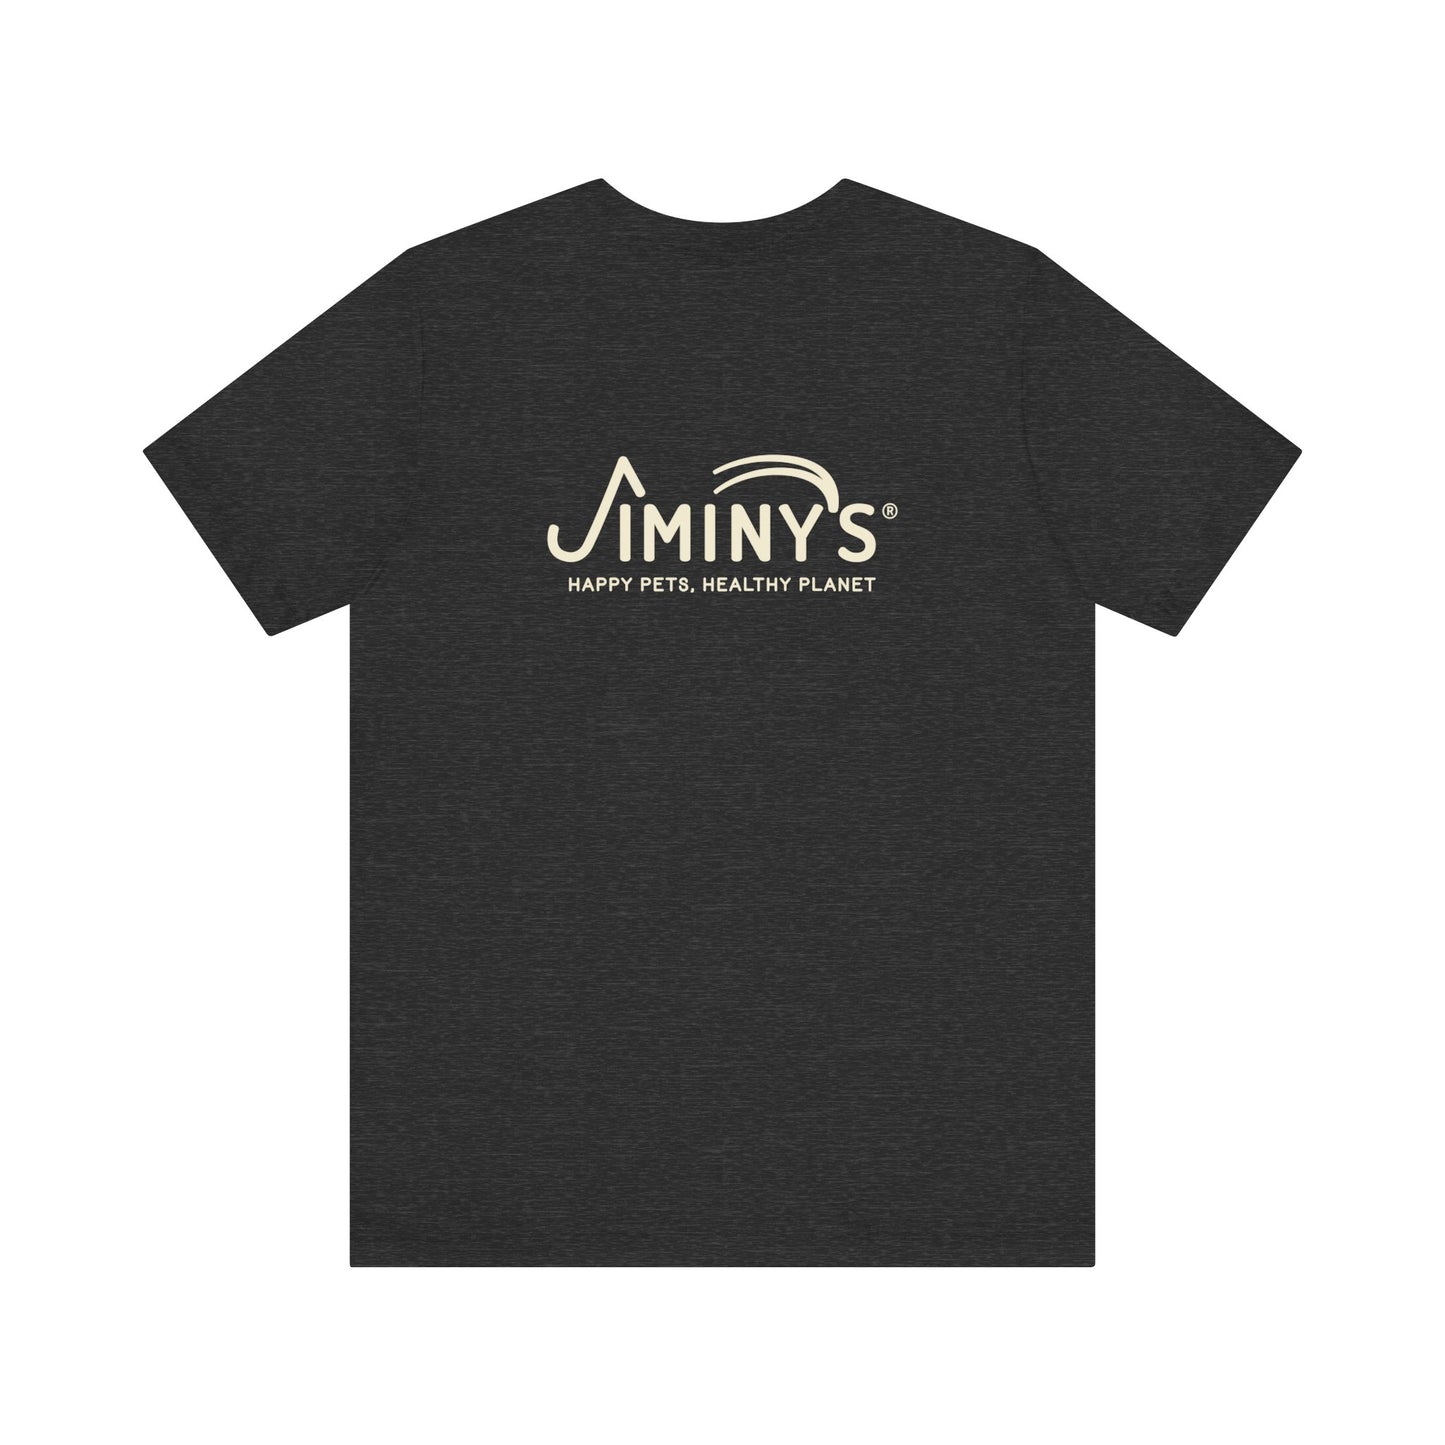 Cricket Shirt with Jiminy's Logo on Back